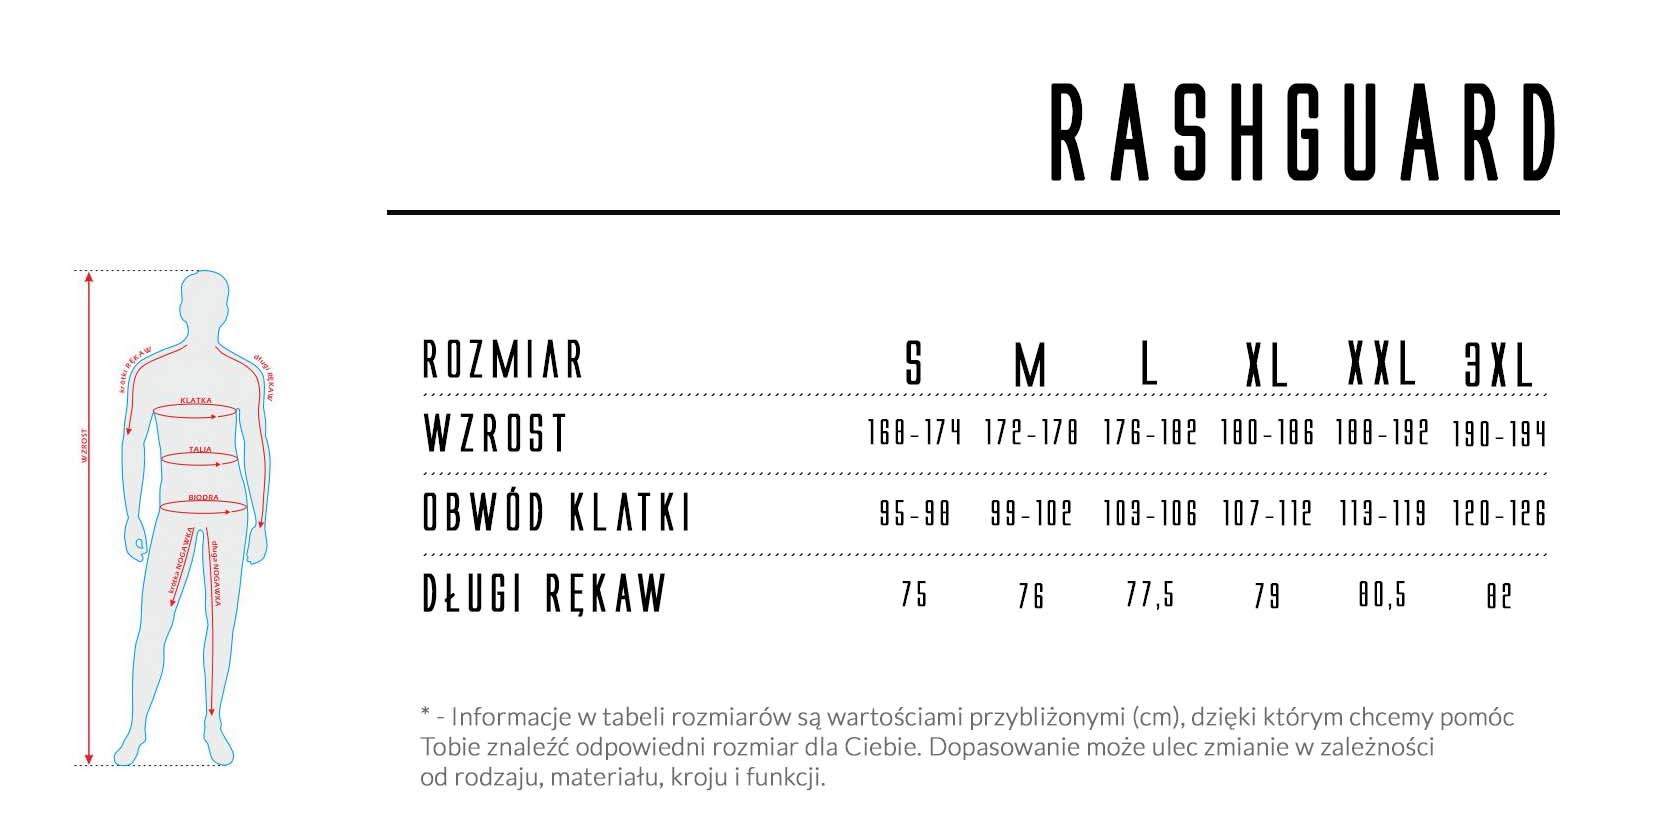 Rashguard - tabela rozmiarów